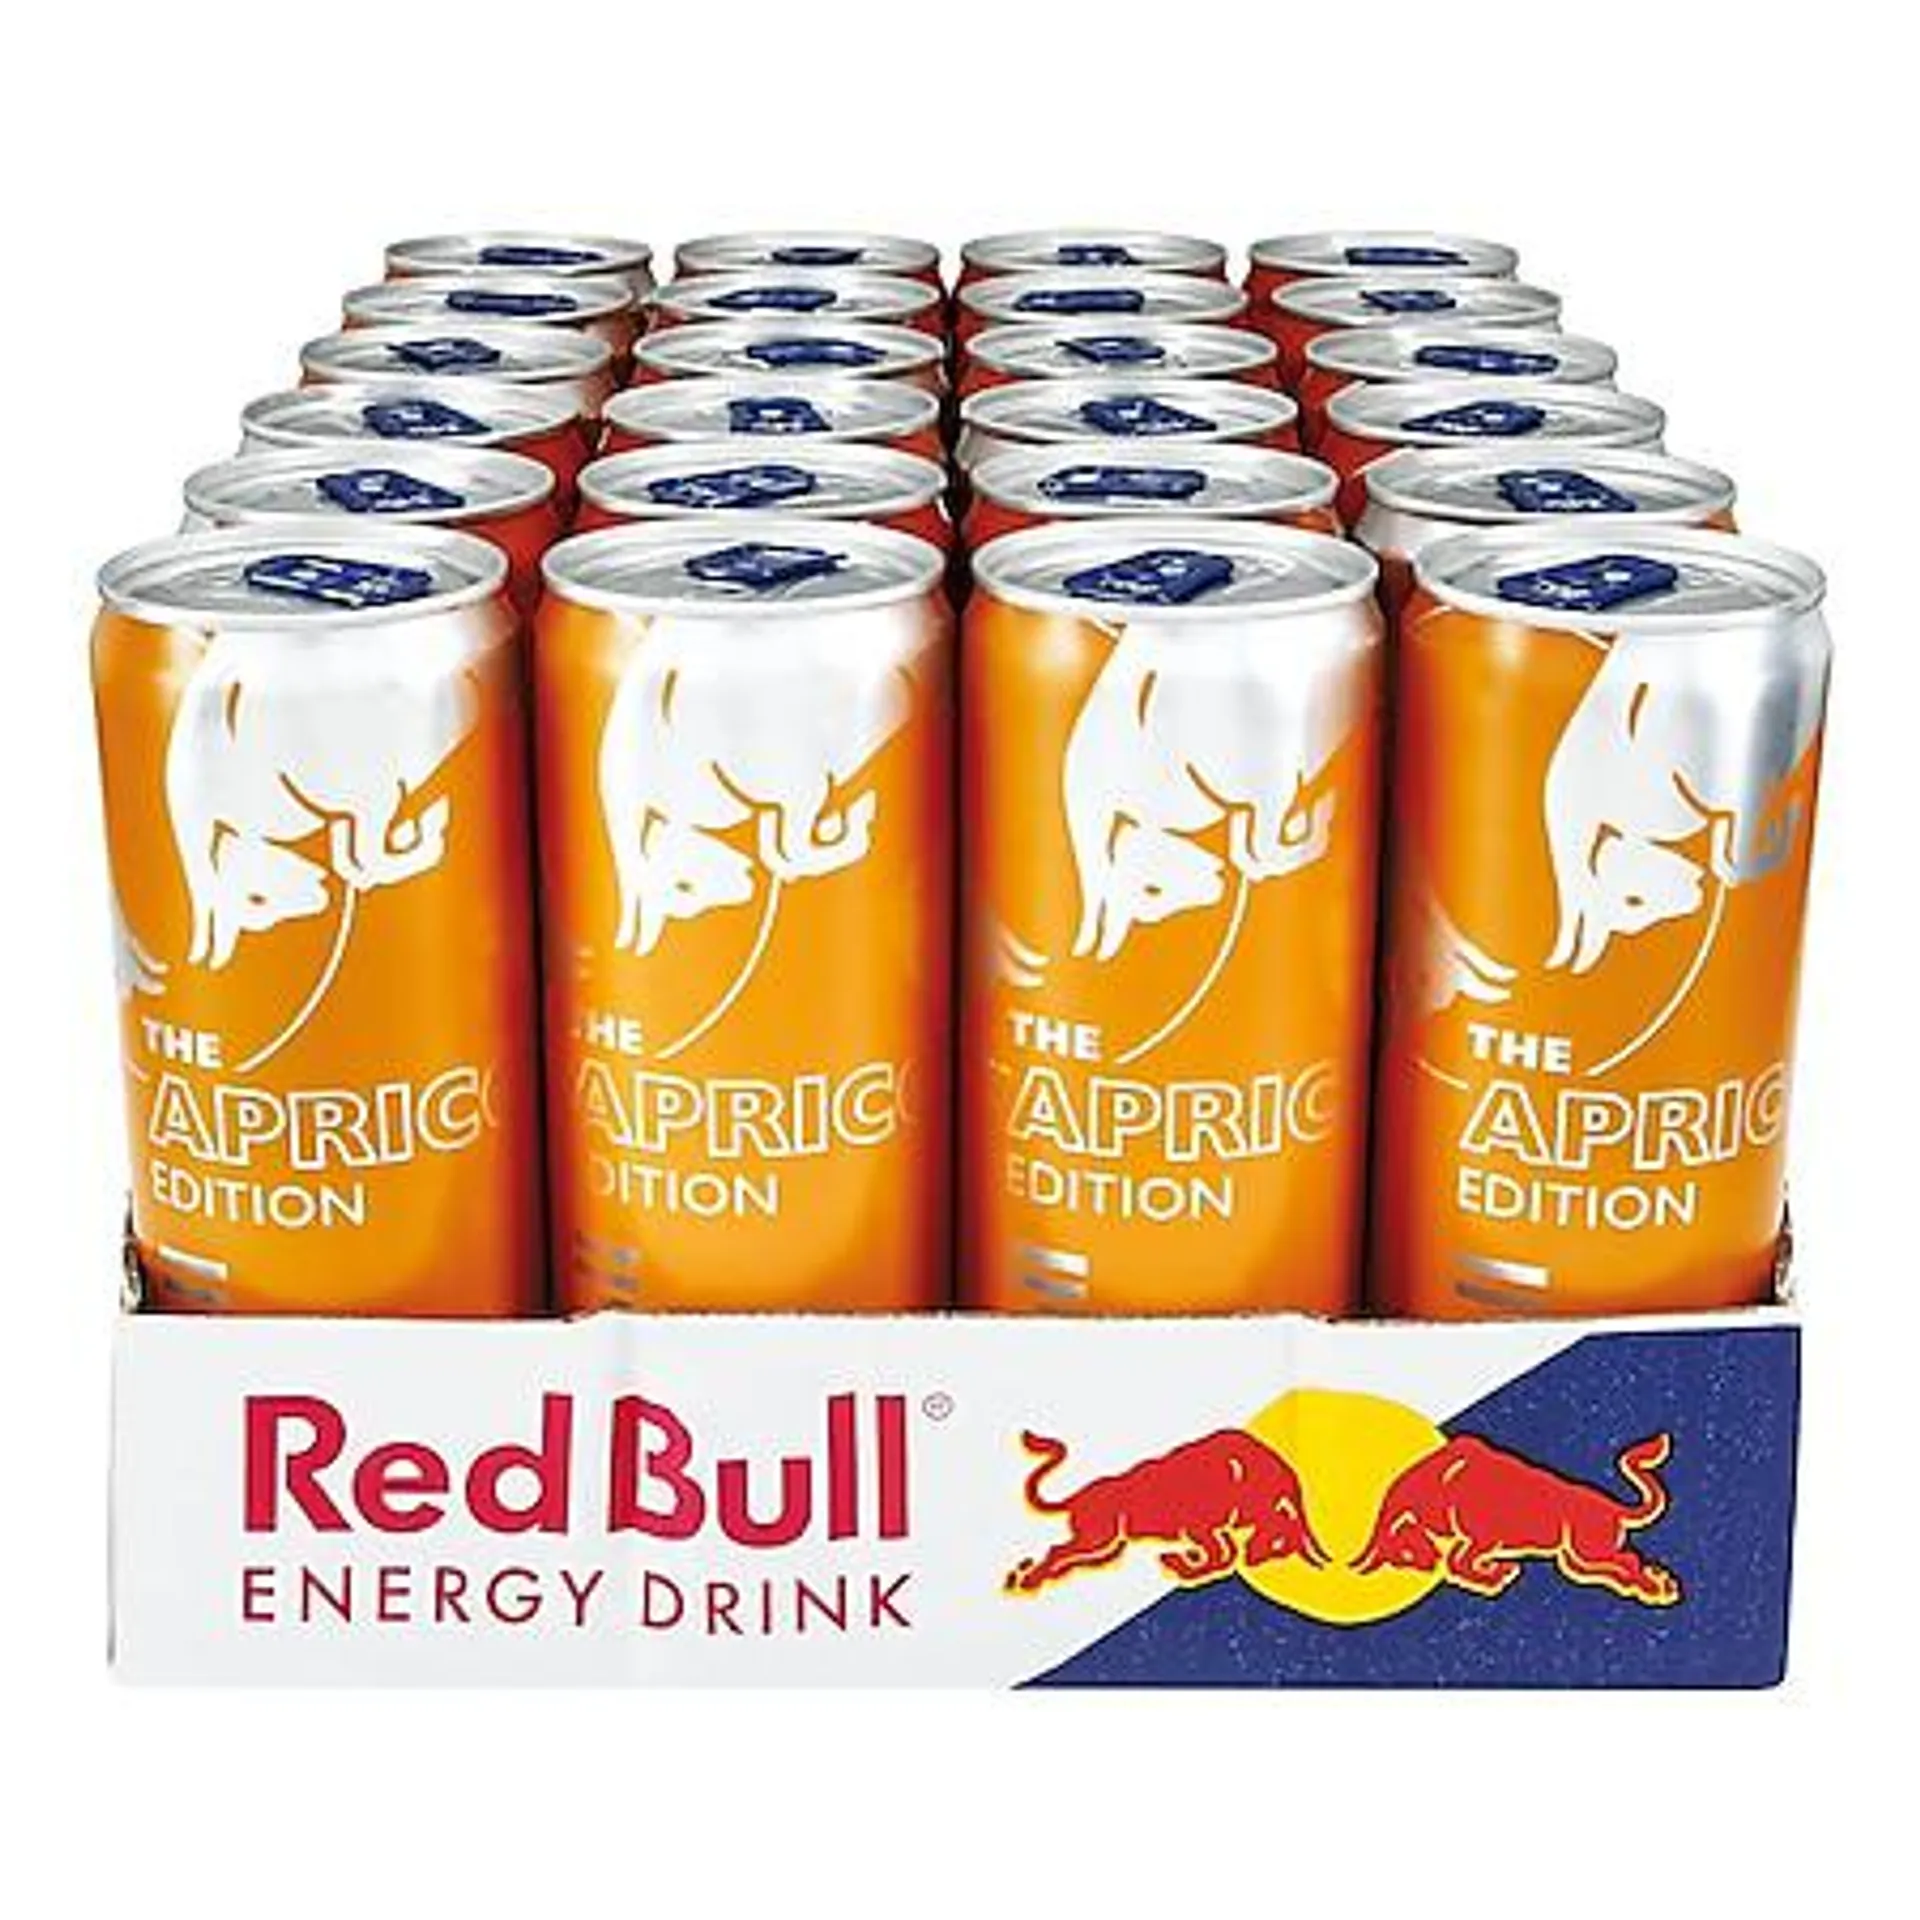 Red Bull Energy Drink Aprikose-Erdbeere 0,355 Liter Dose, 24er Pack